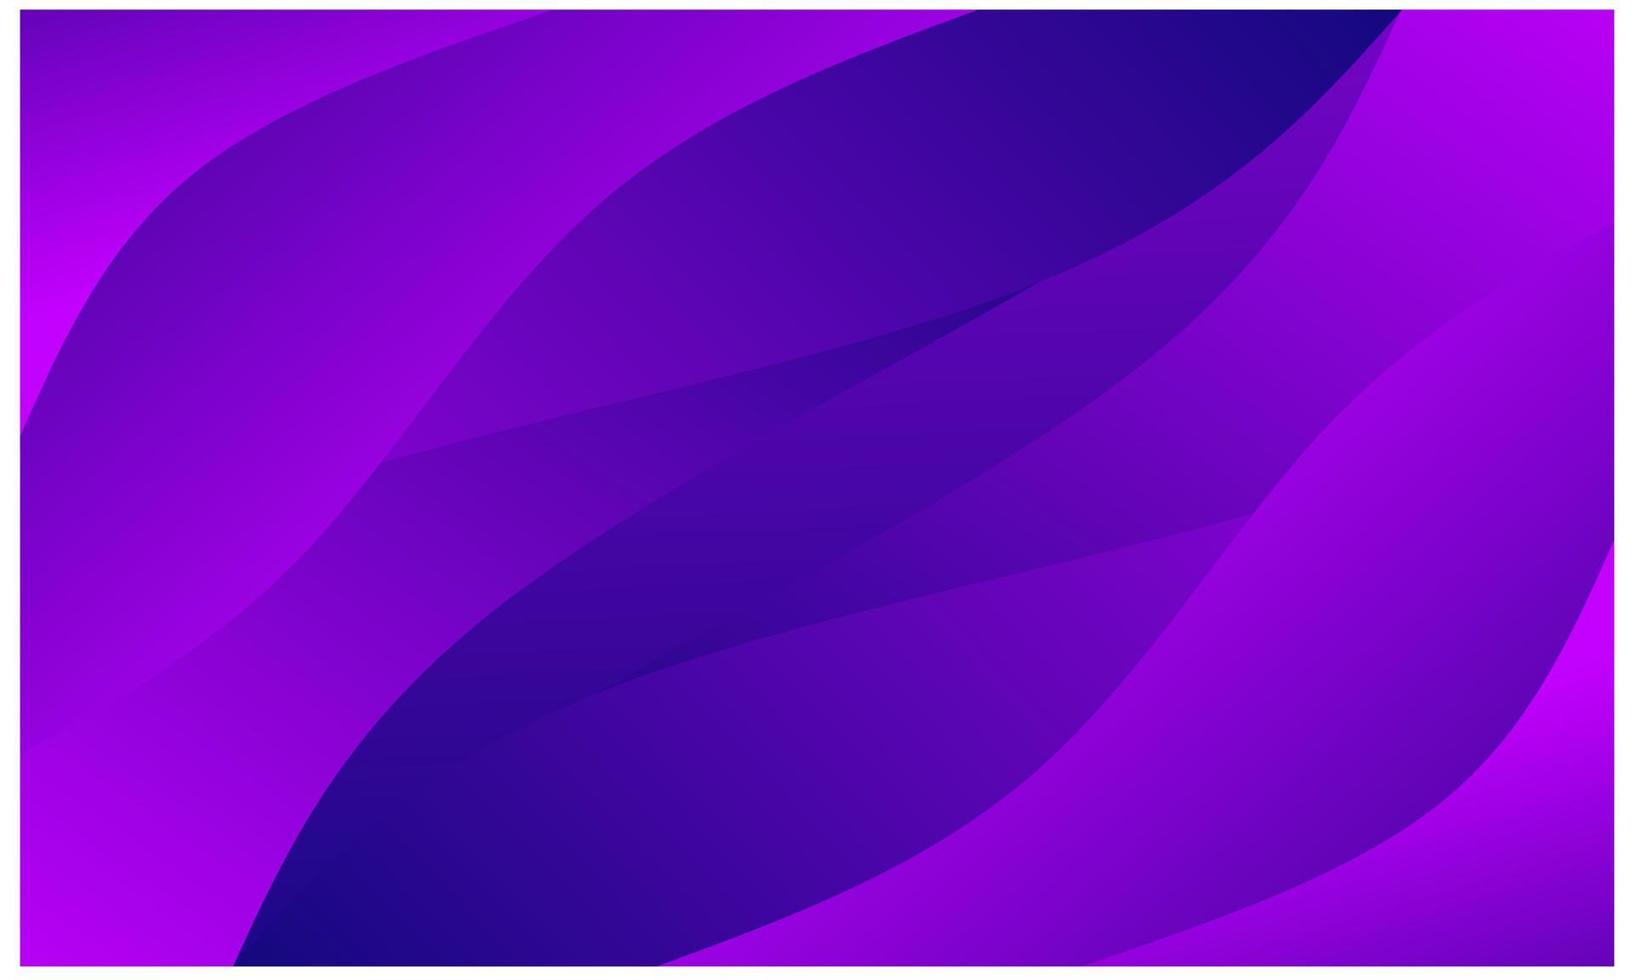 fond de vague abstrait violet foncé élégant moderne pour la présentation, le fond web, l'affiche, la bannière, etc. vecteur